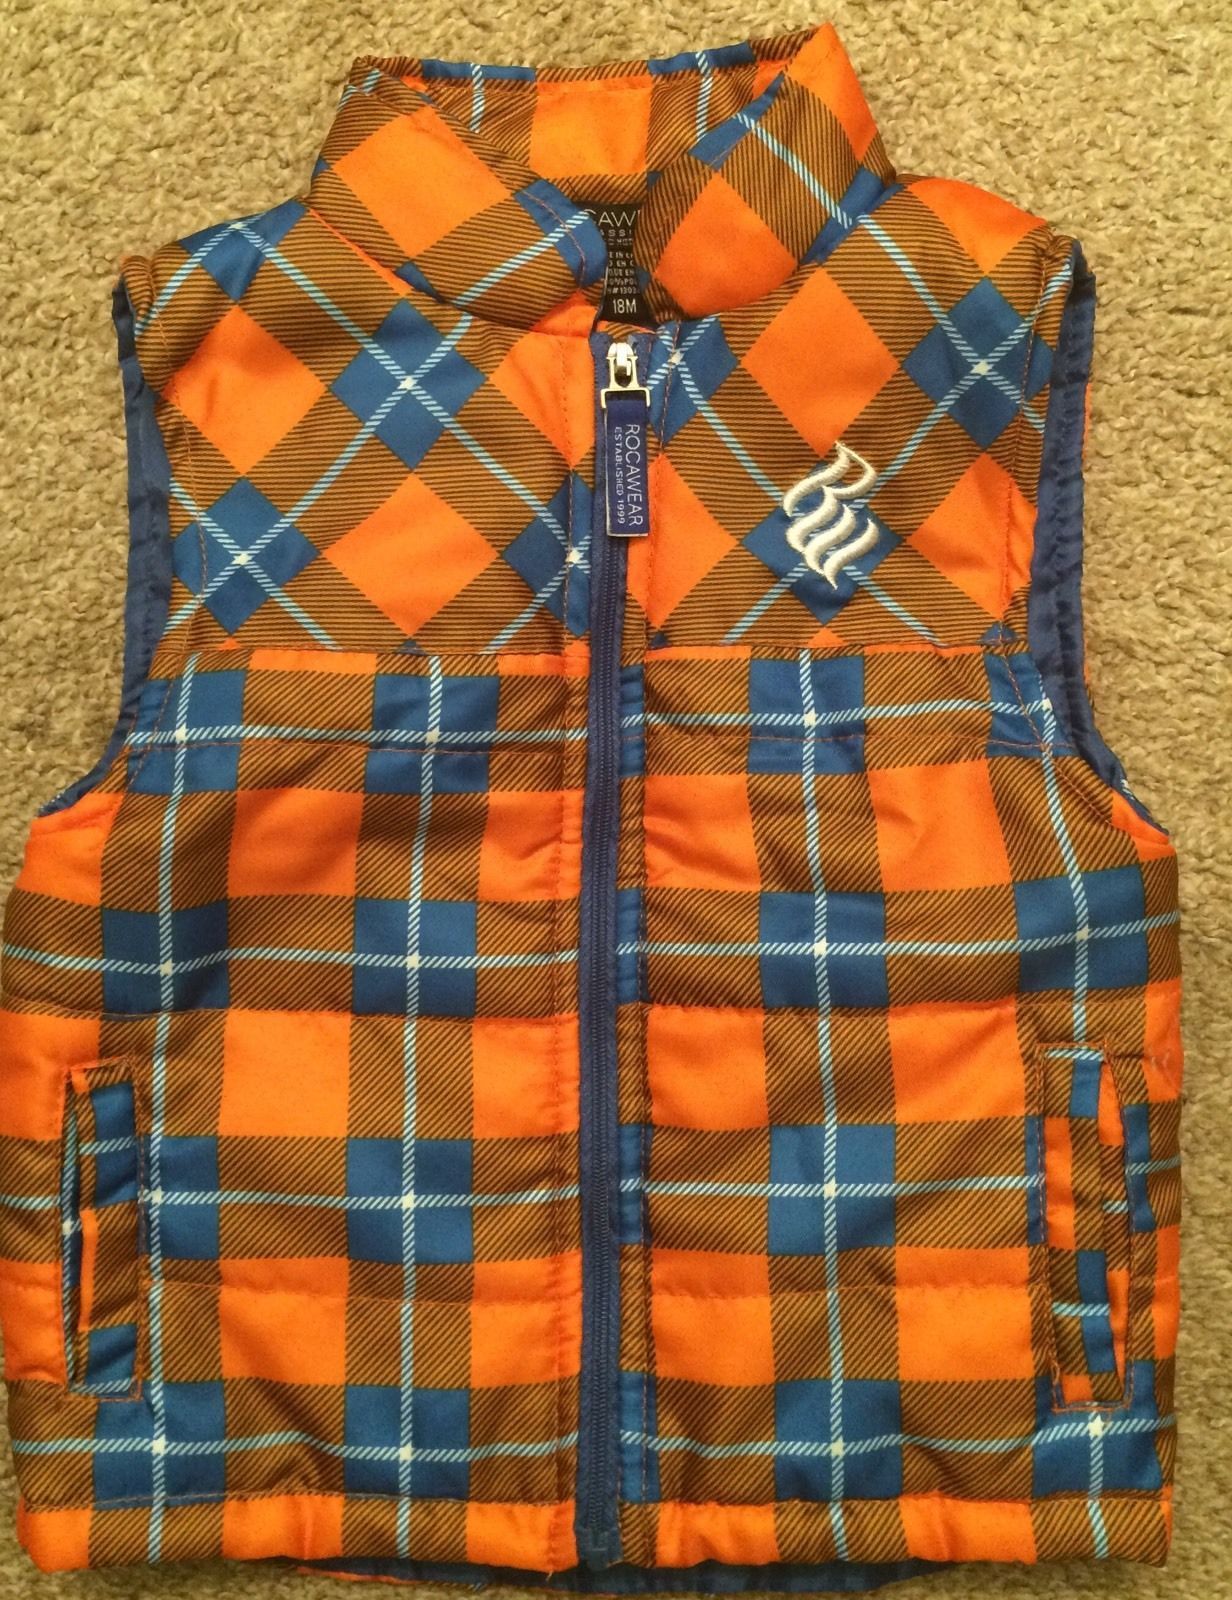 Rocawear Boys Vest 18m Blue And Orange Plaid - $9.49